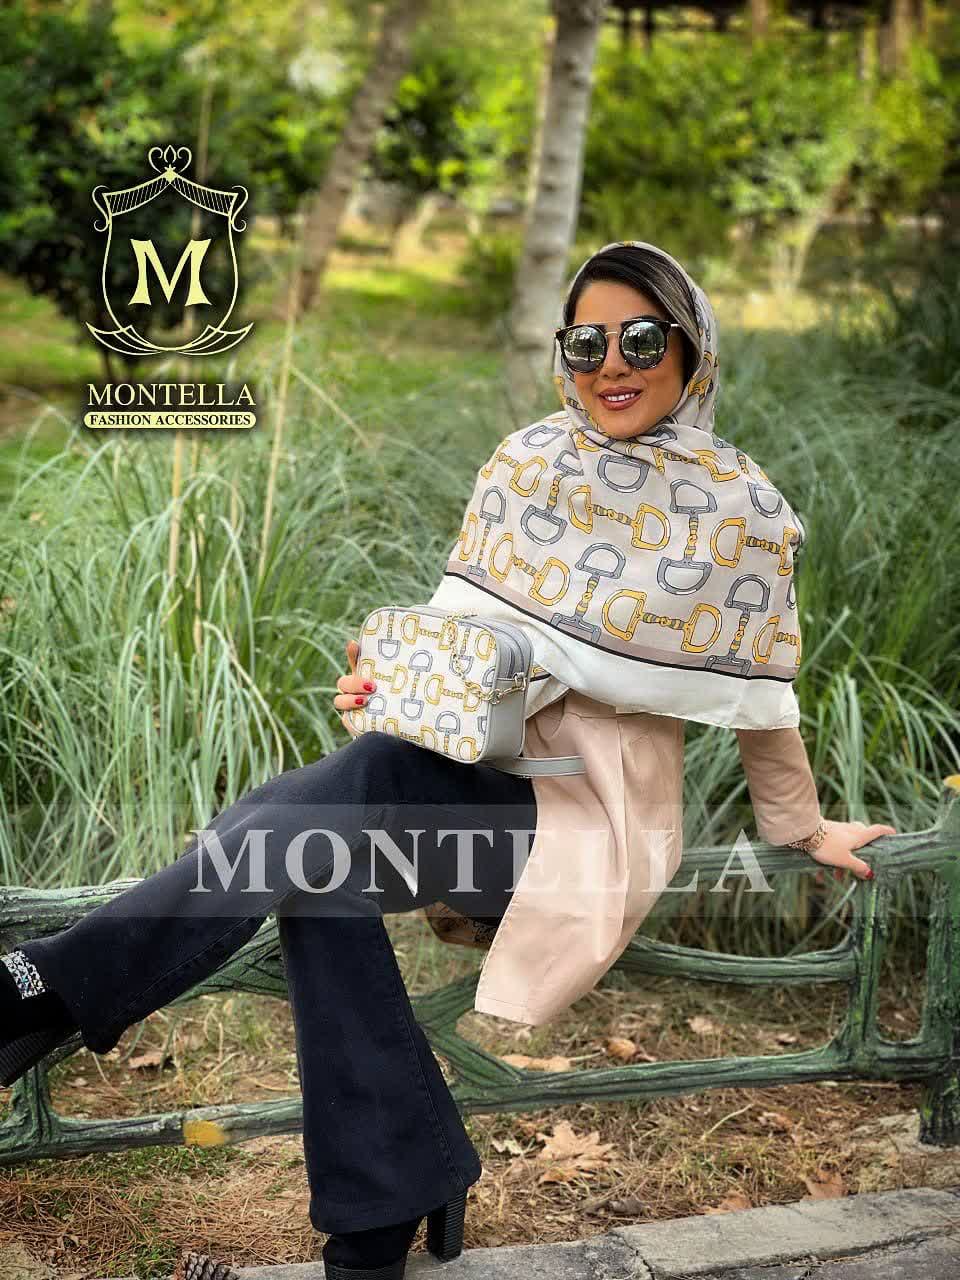 ست کیف و روسری زنانه طرح نلین رنگ زرد با کیف کوچک کیفیت عالی با ارسال رایگان کد mo427